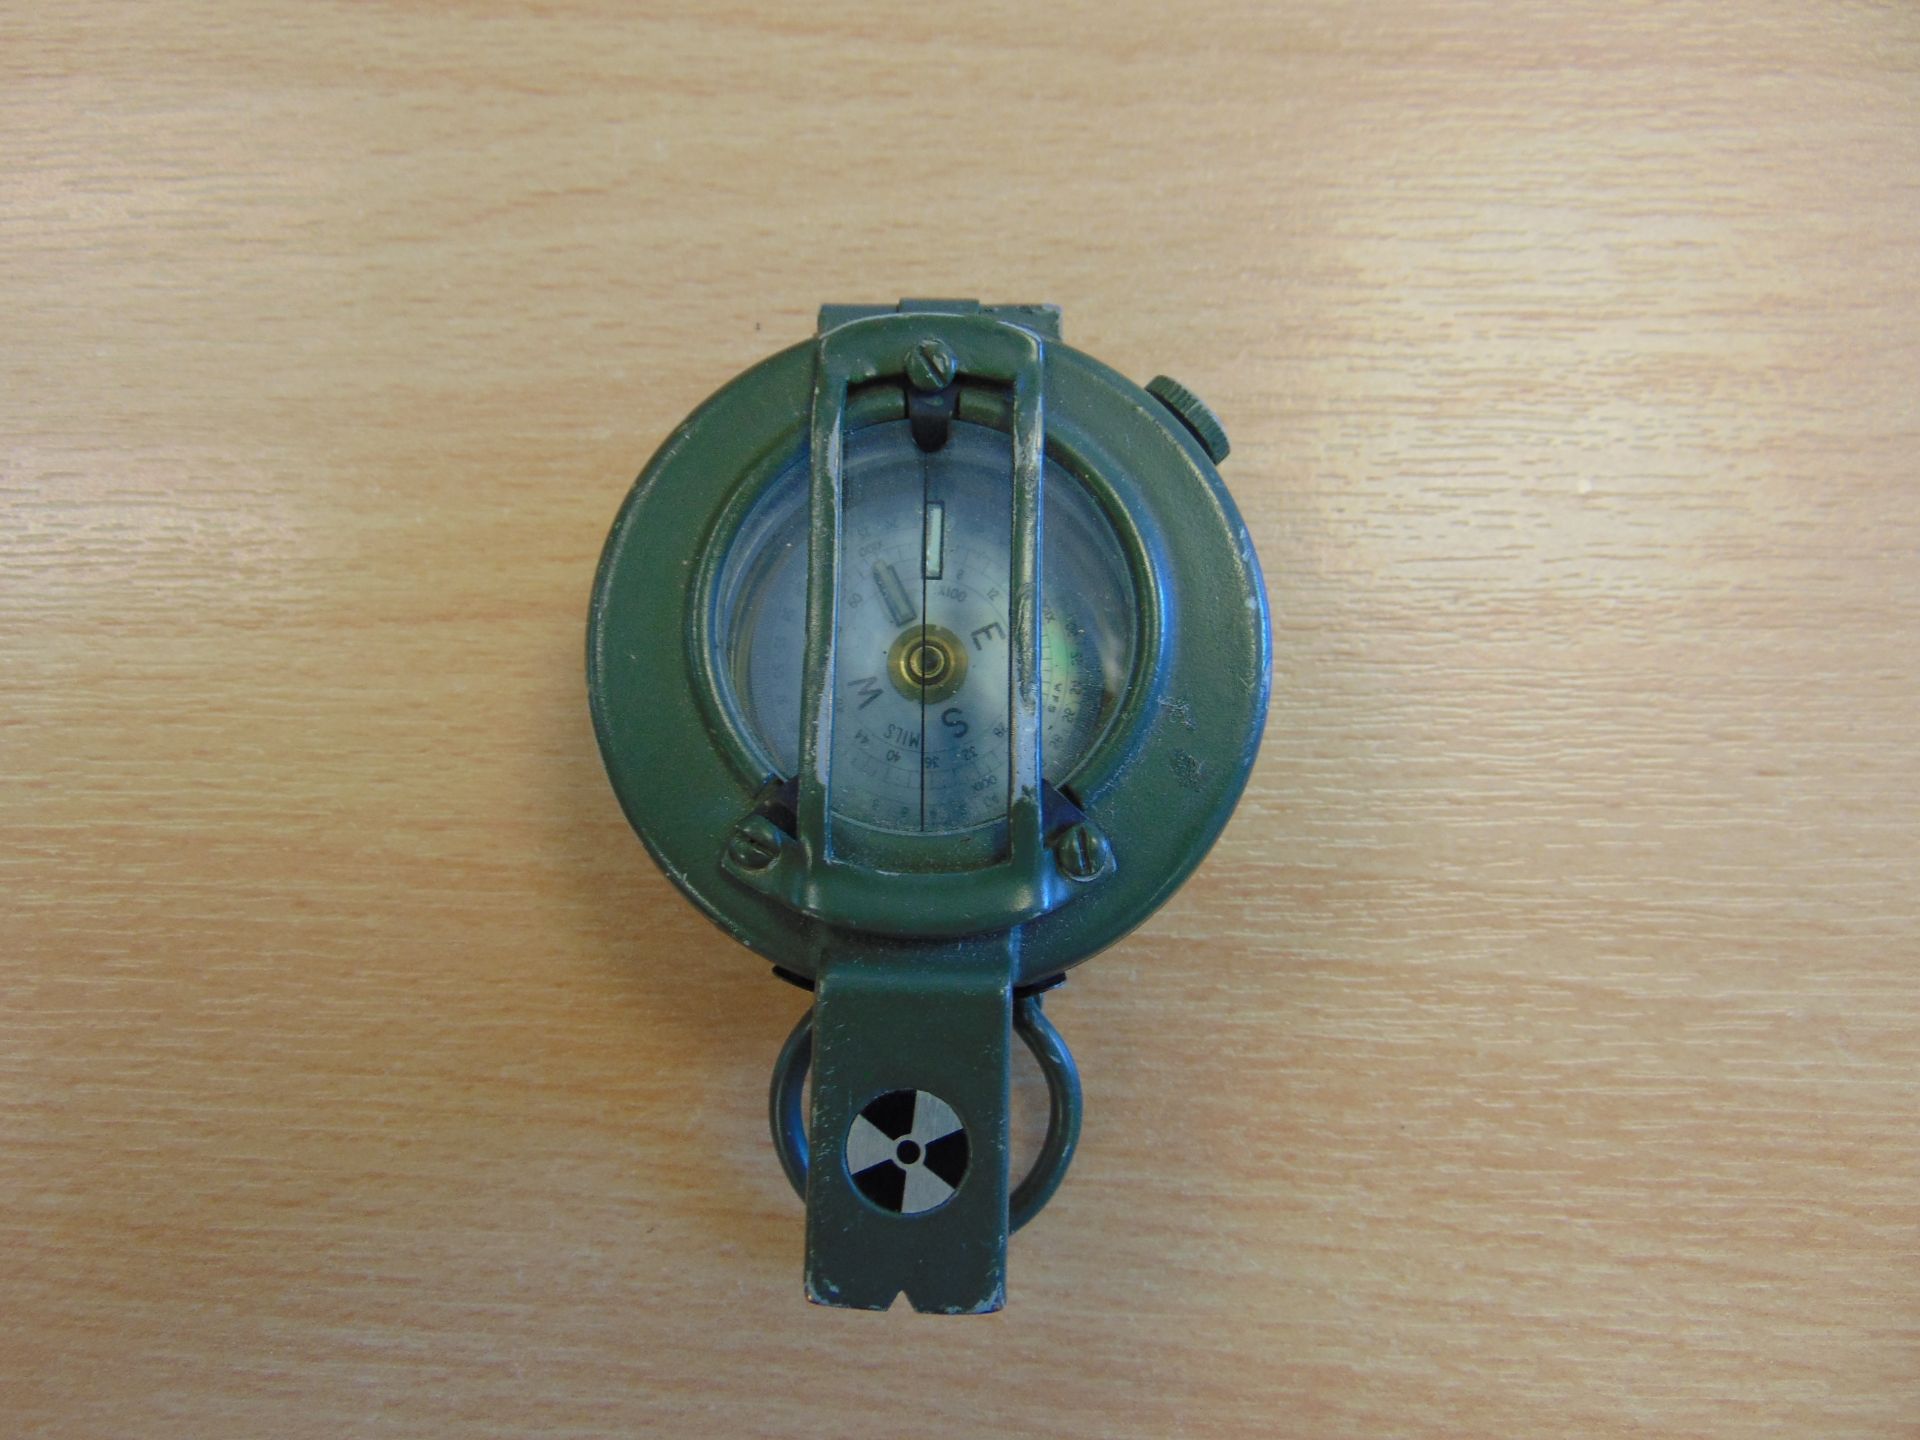 Stanley London British Army Brass Prismatic Compass in Mils, Nato Marks - Bild 2 aus 3